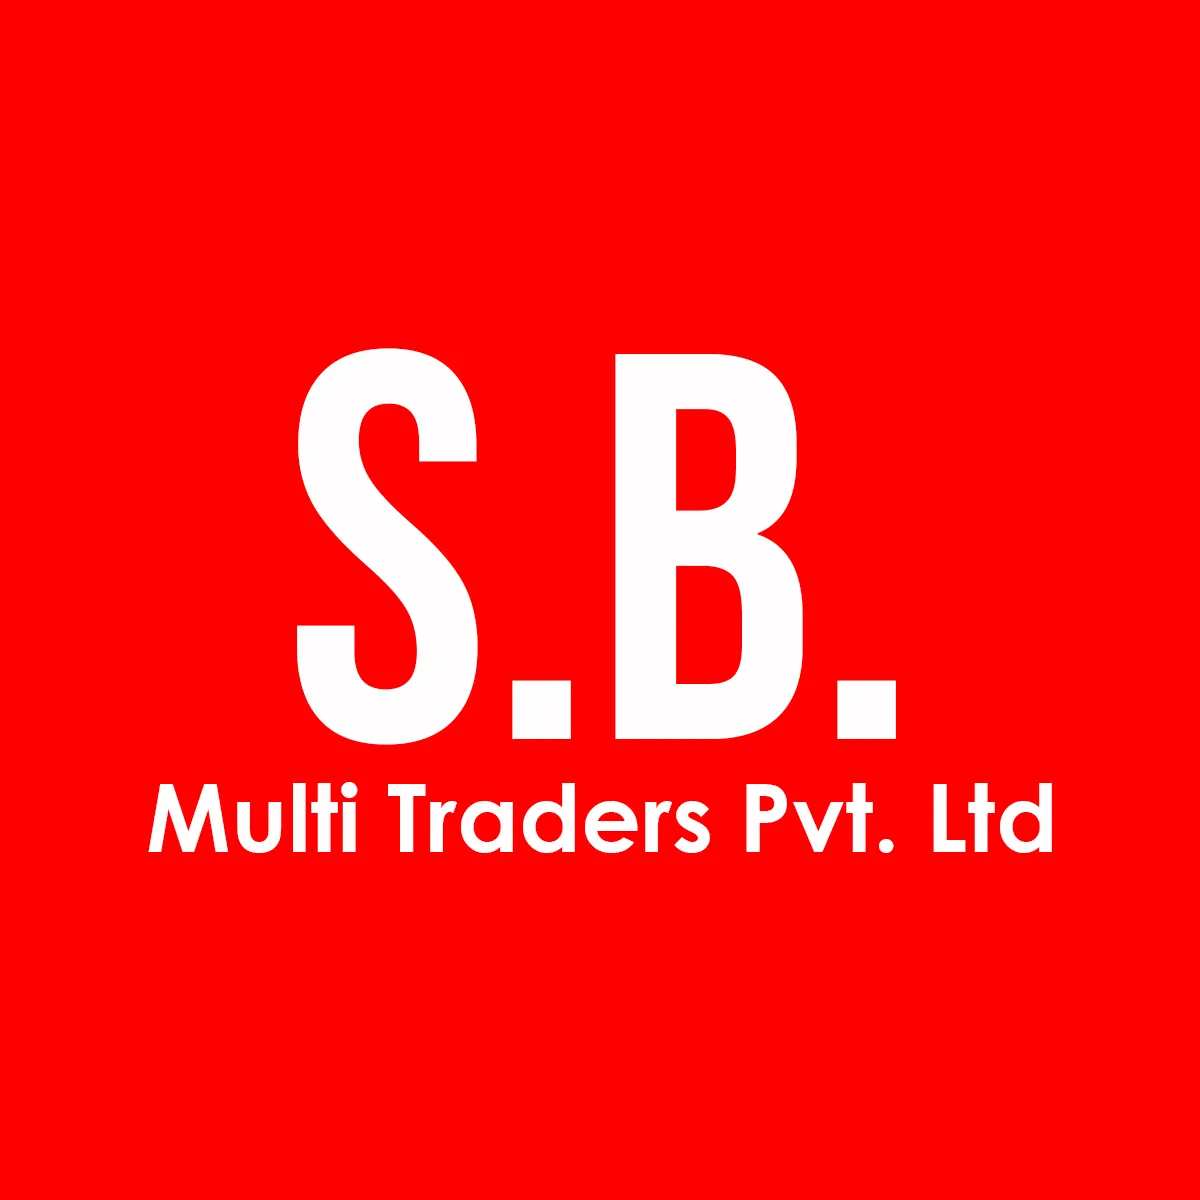 S.B. Multi Traders Pvt. Ltd